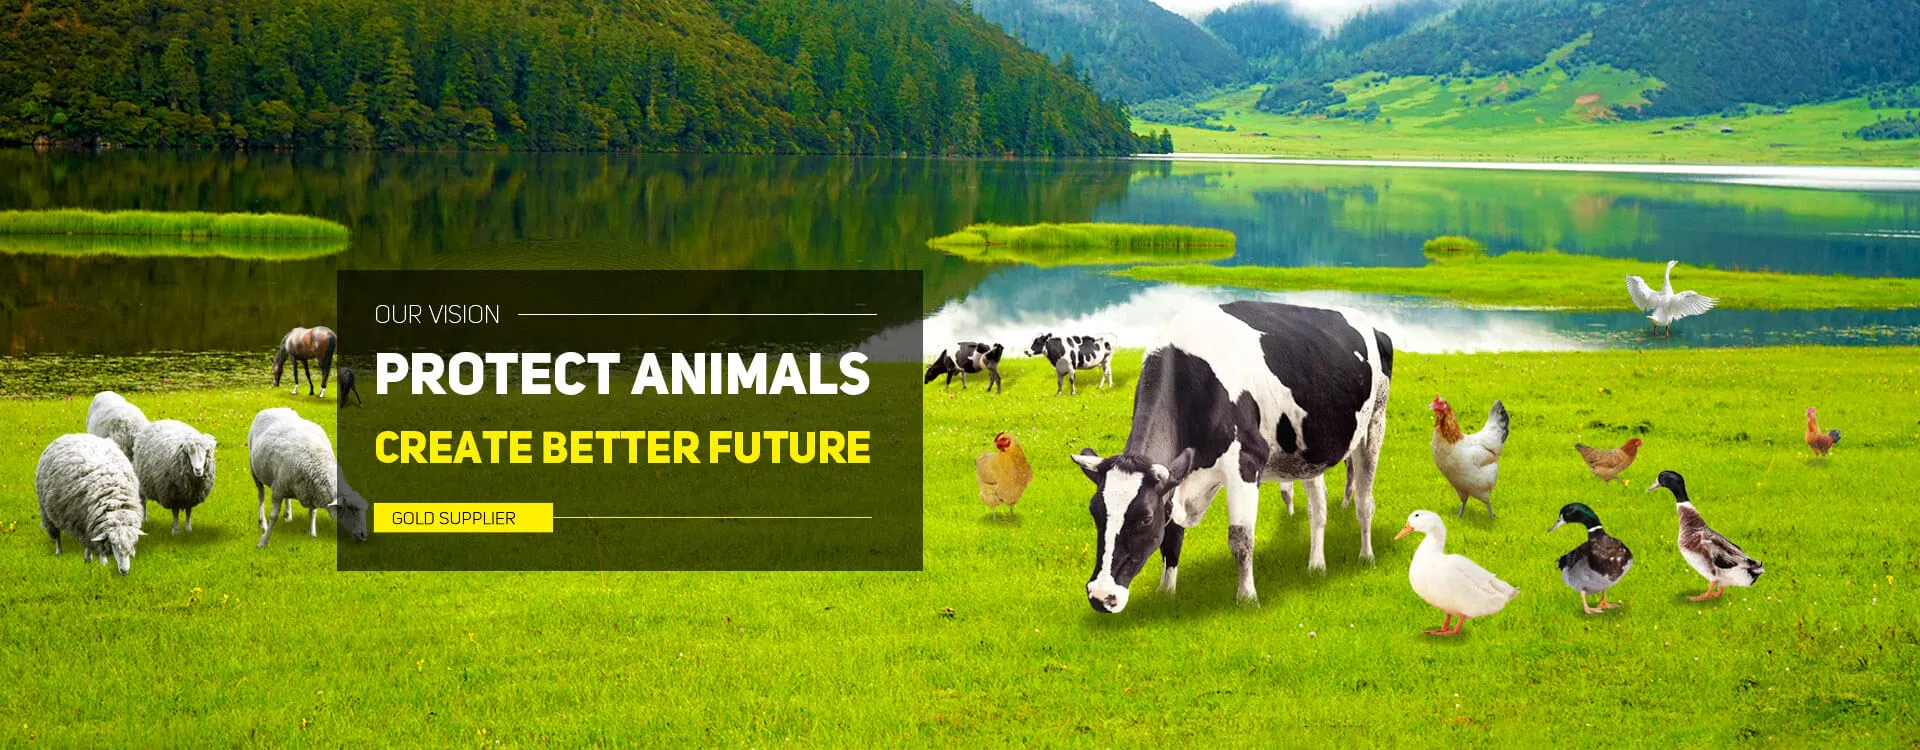 حماية الحيوانات ، وخلق مستقبل أفضل